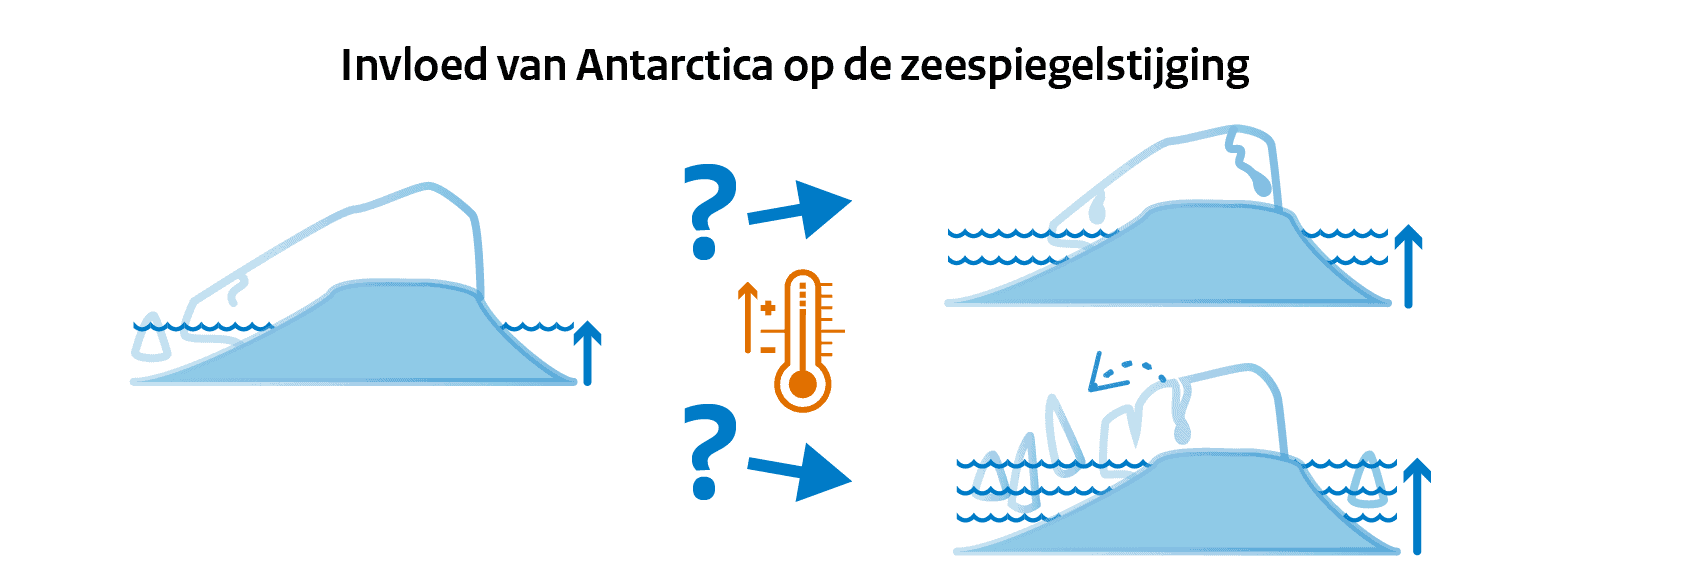 Invloed van Antarctica op de zeespiegelstijging